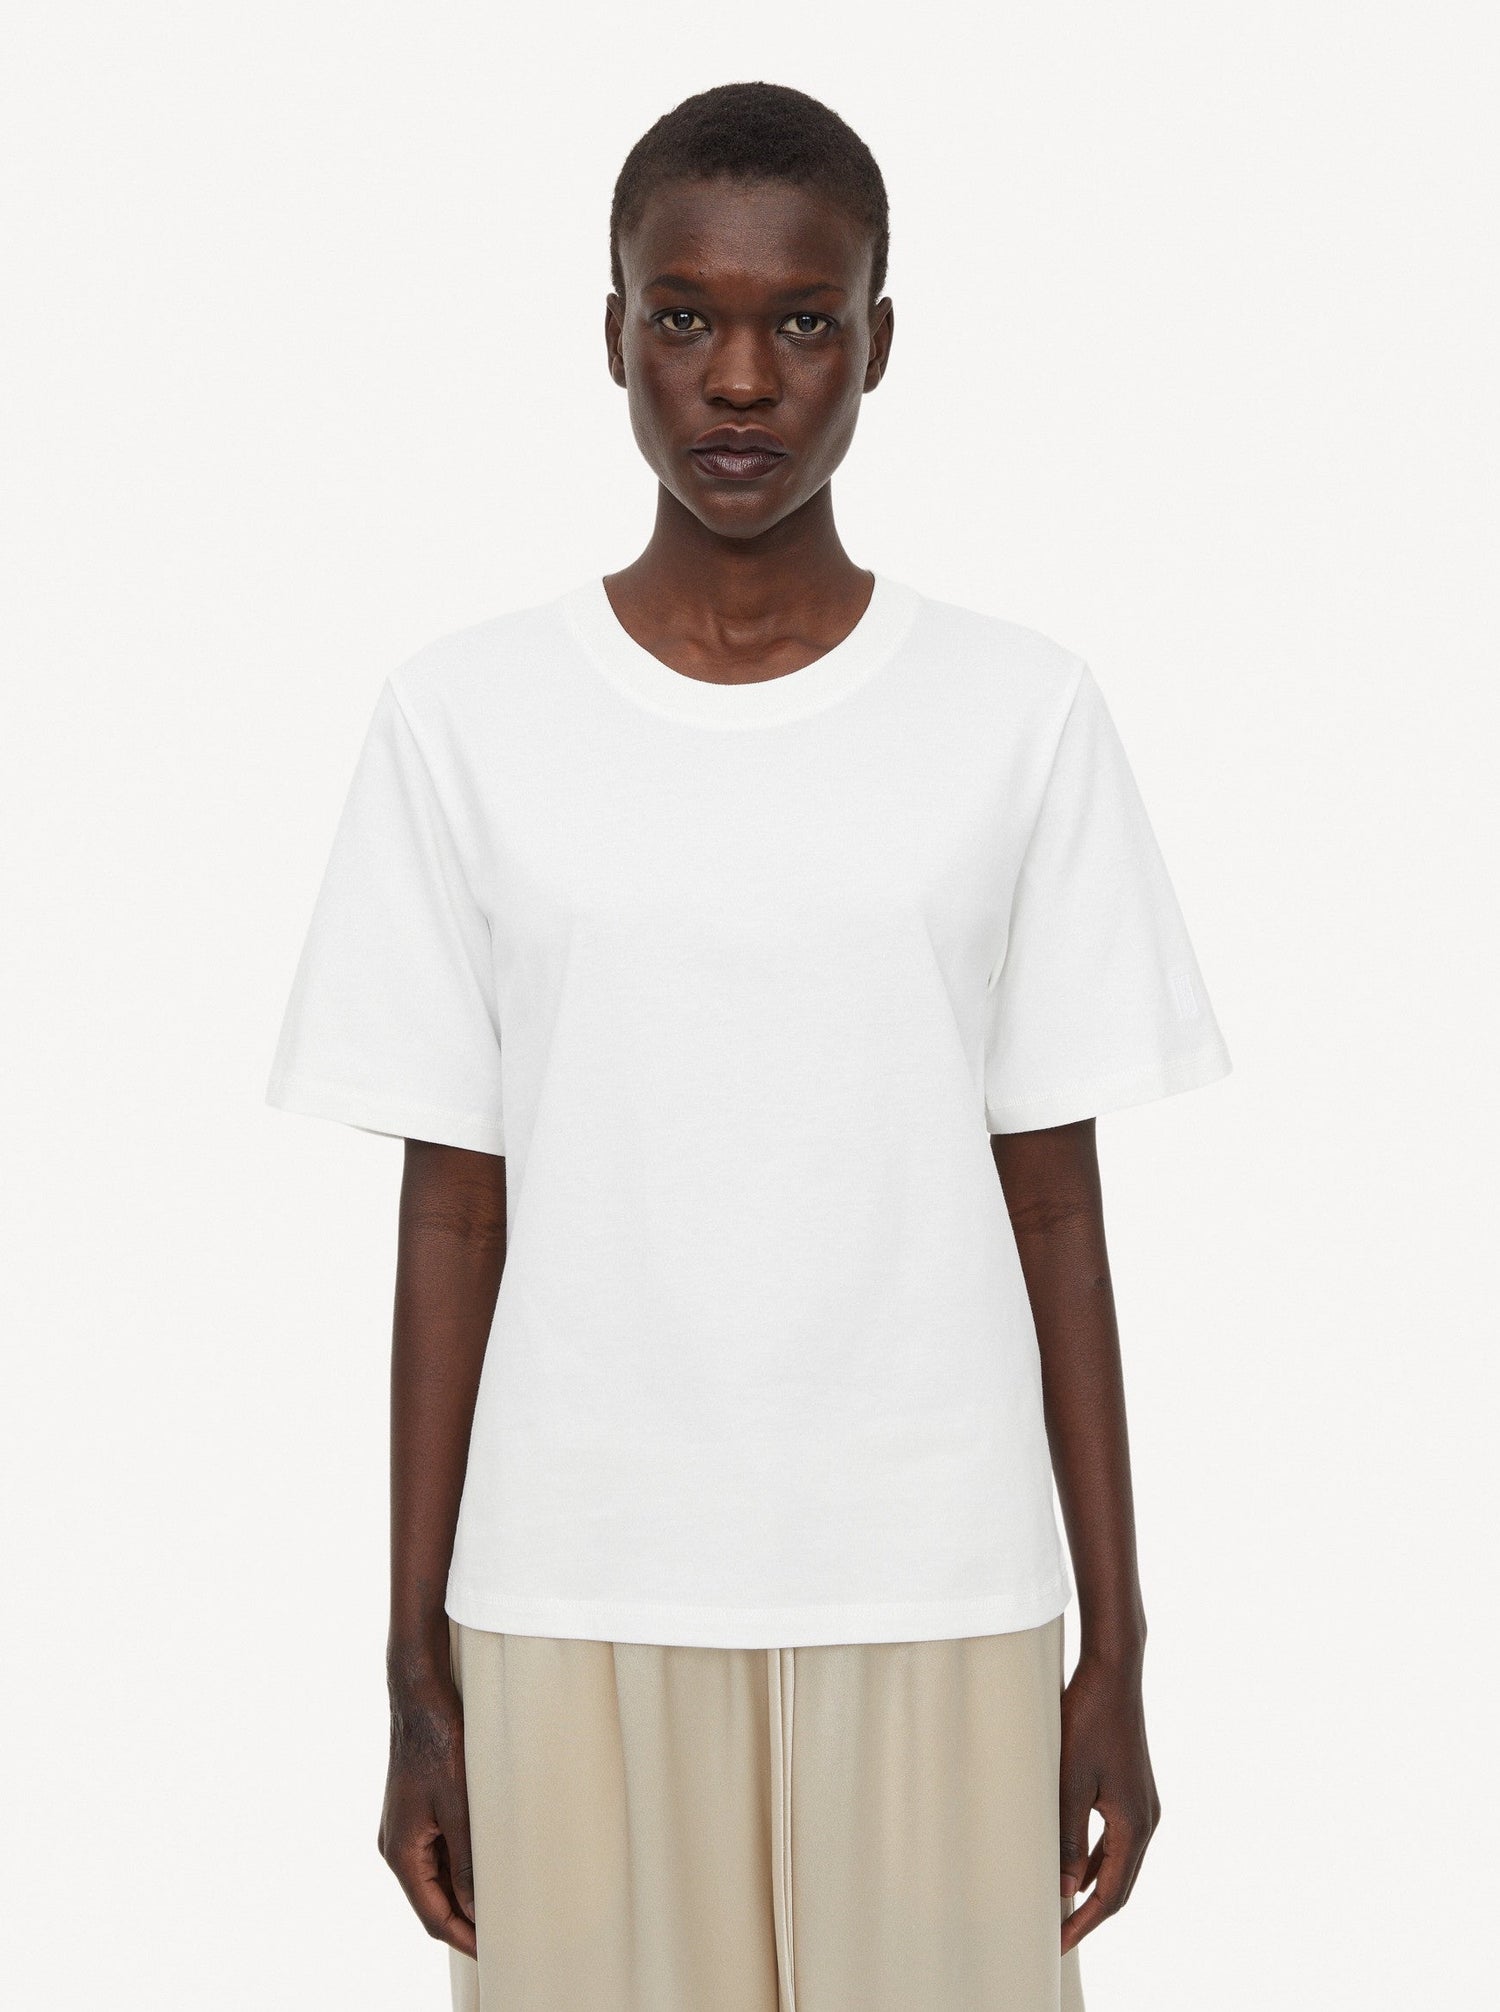 Hedil T-shirt, soft white